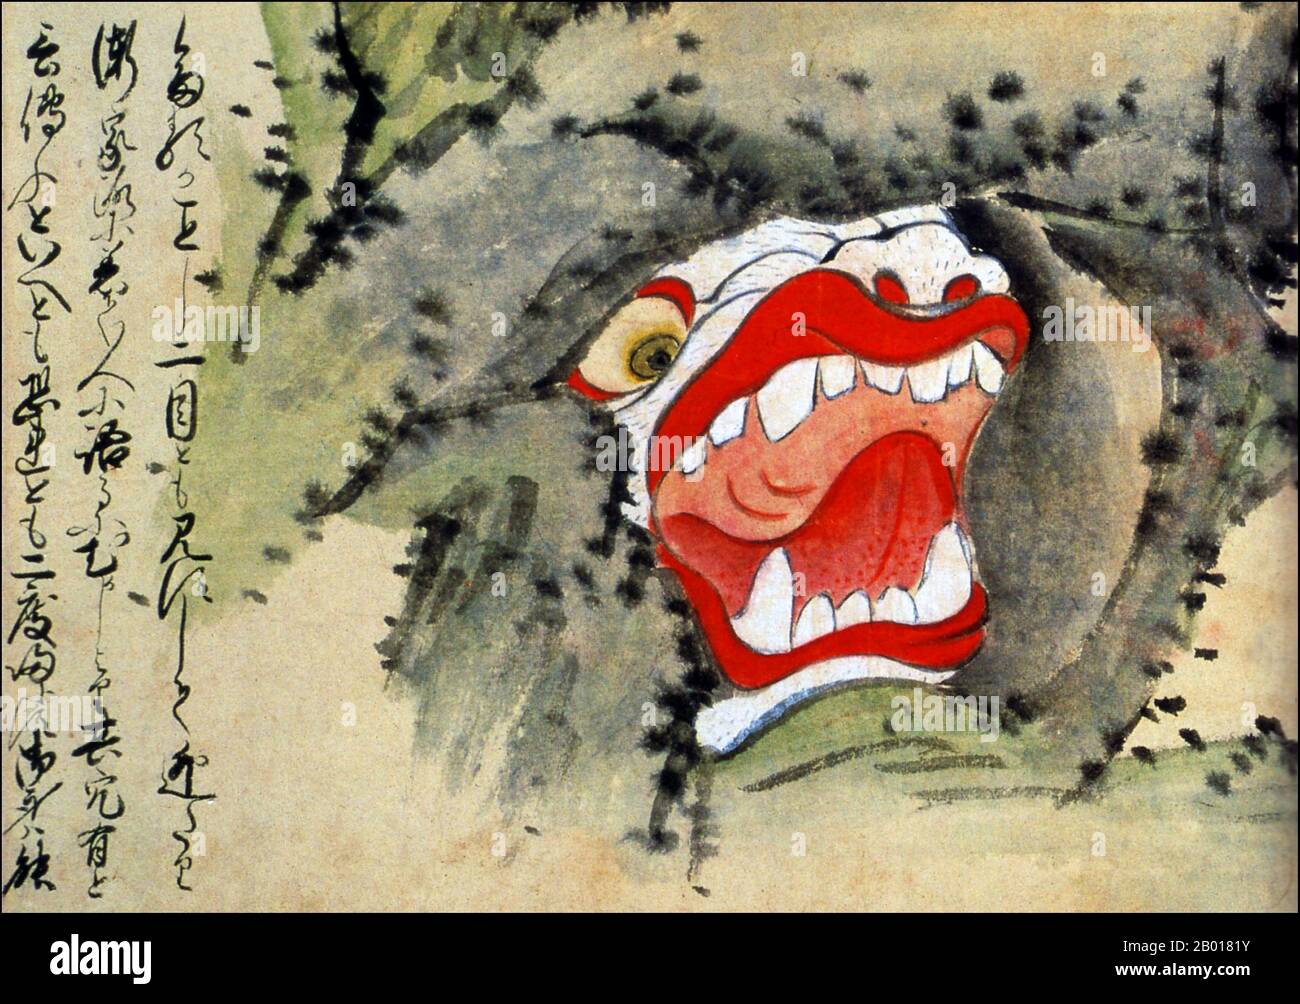 Japon : le « trou de la liste » de la préfecture de Kumamoto.Du Kaikidan Ekotoba Monster Scroll, au milieu du 19th siècle.Cette illustration montre une grotte monstre que l'on croit exister au fond des montagnes de la préfecture de Kumamoto.À première vue, il ressemble à une grotte ordinaire.Mais à l'approche de l'entrée, les yeux et les dents deviennent visibles.Le Kaikidan Ekotoba est un handscroll du milieu du 19th siècle qui présente 33 monstres légendaires et odyties humaines, principalement de la région de Kyushu au Japon, mais avec plusieurs d'autres pays, y compris la Chine, la Russie et la Corée. Banque D'Images